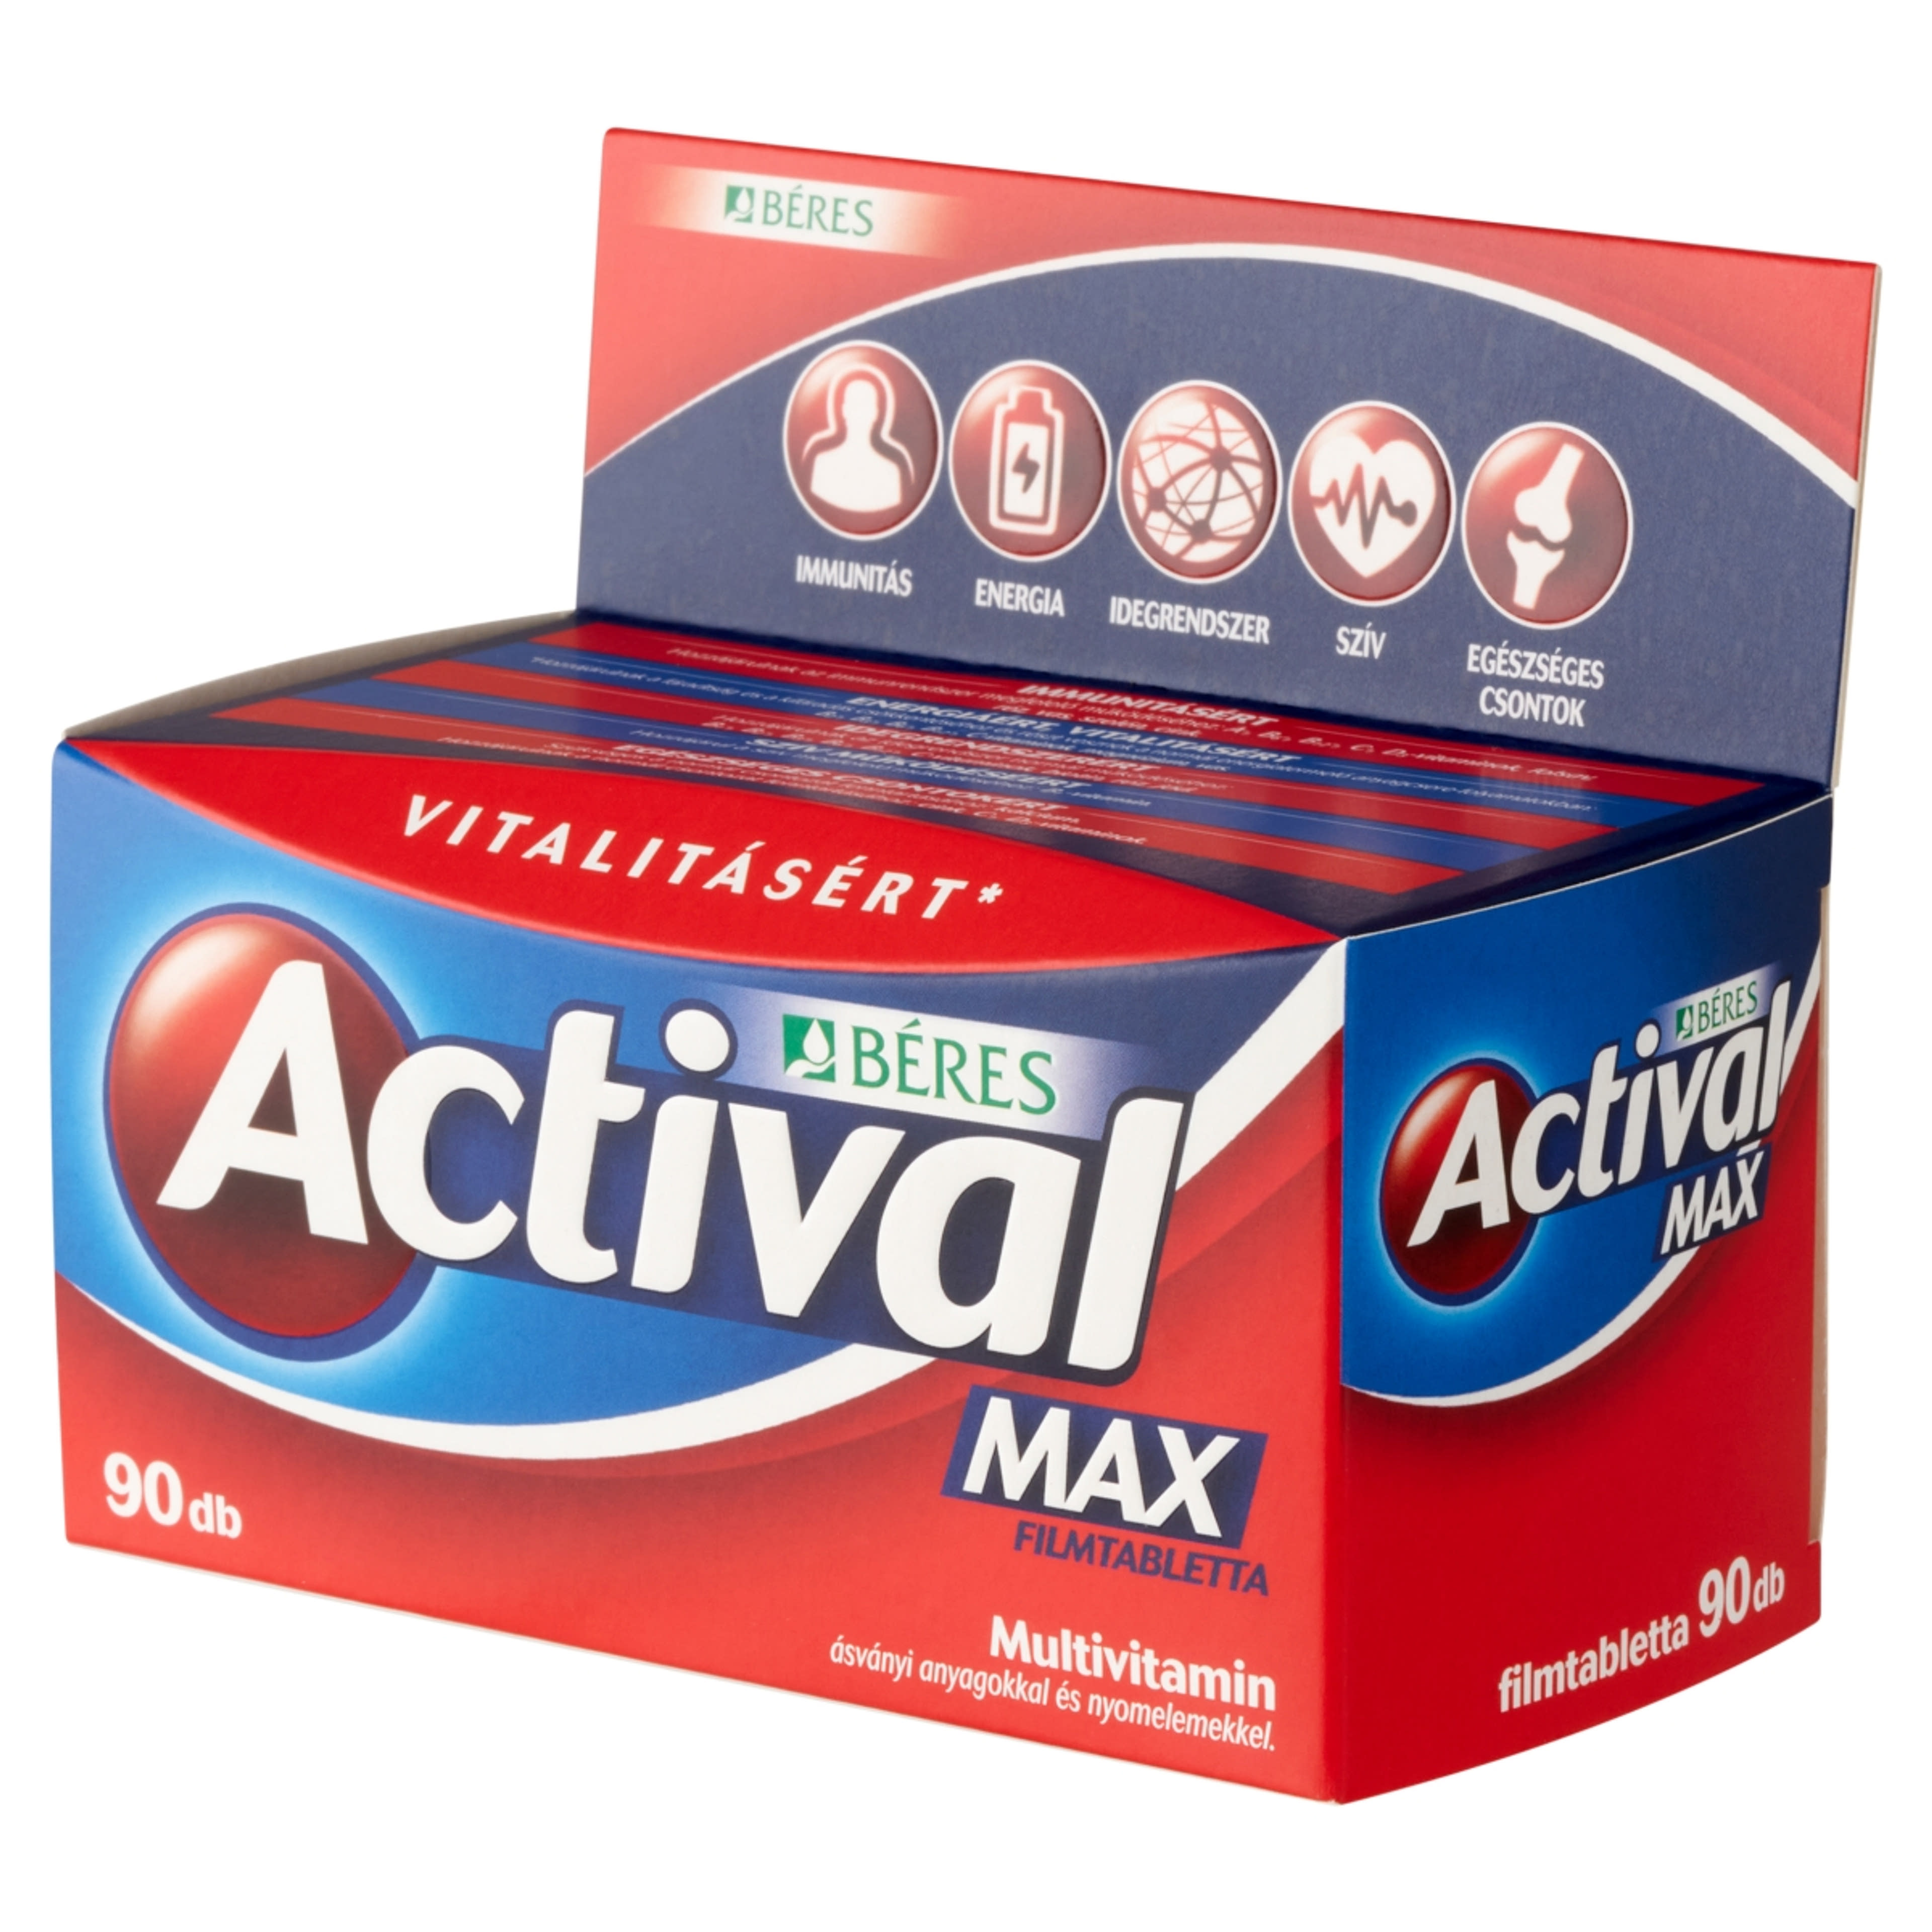 Actival Max tabletta - 90 db-3